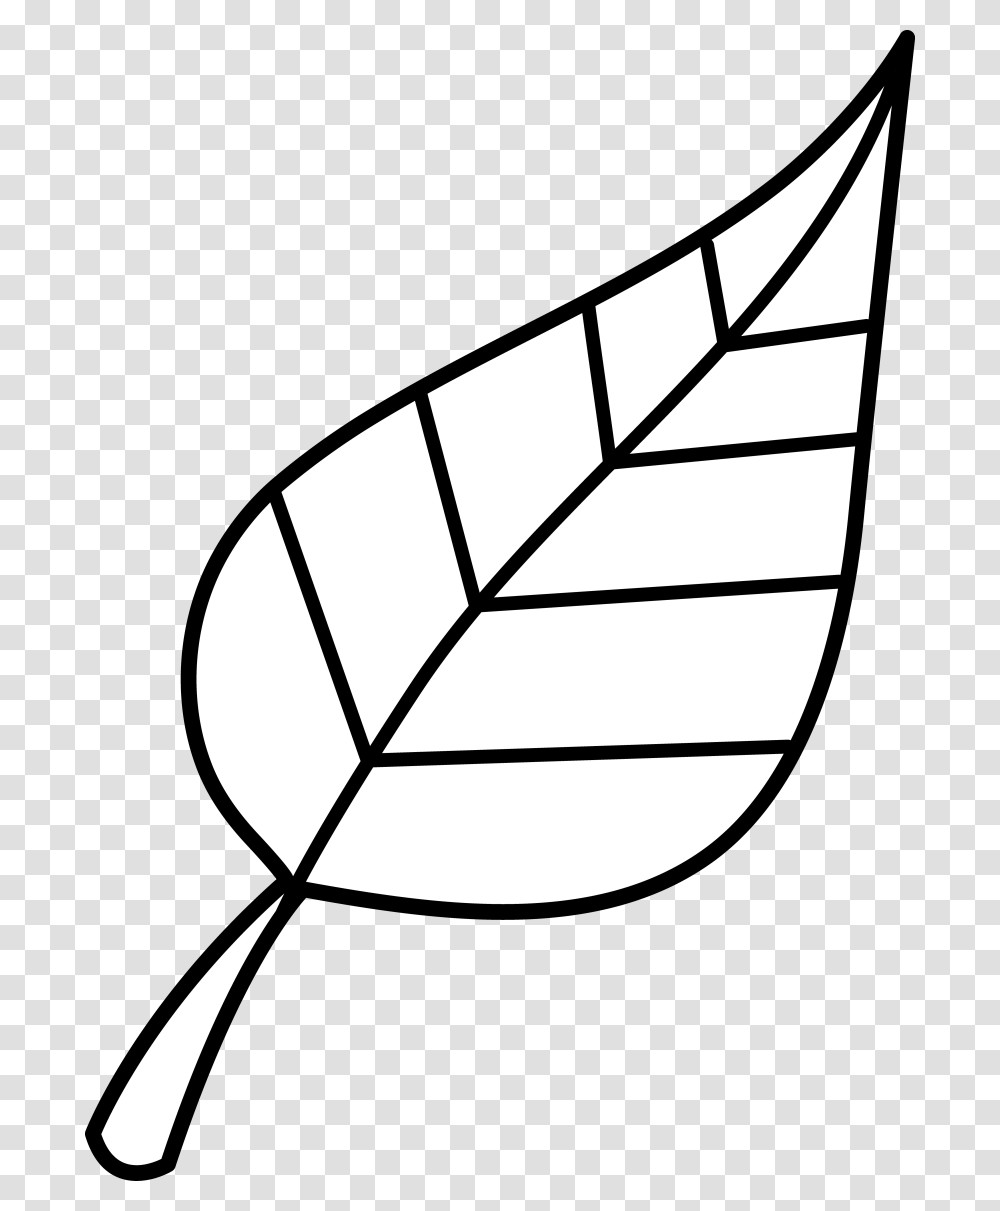 Palm Leaf Clip Art, Plant, Veins, Lamp, Diamond Transparent Png